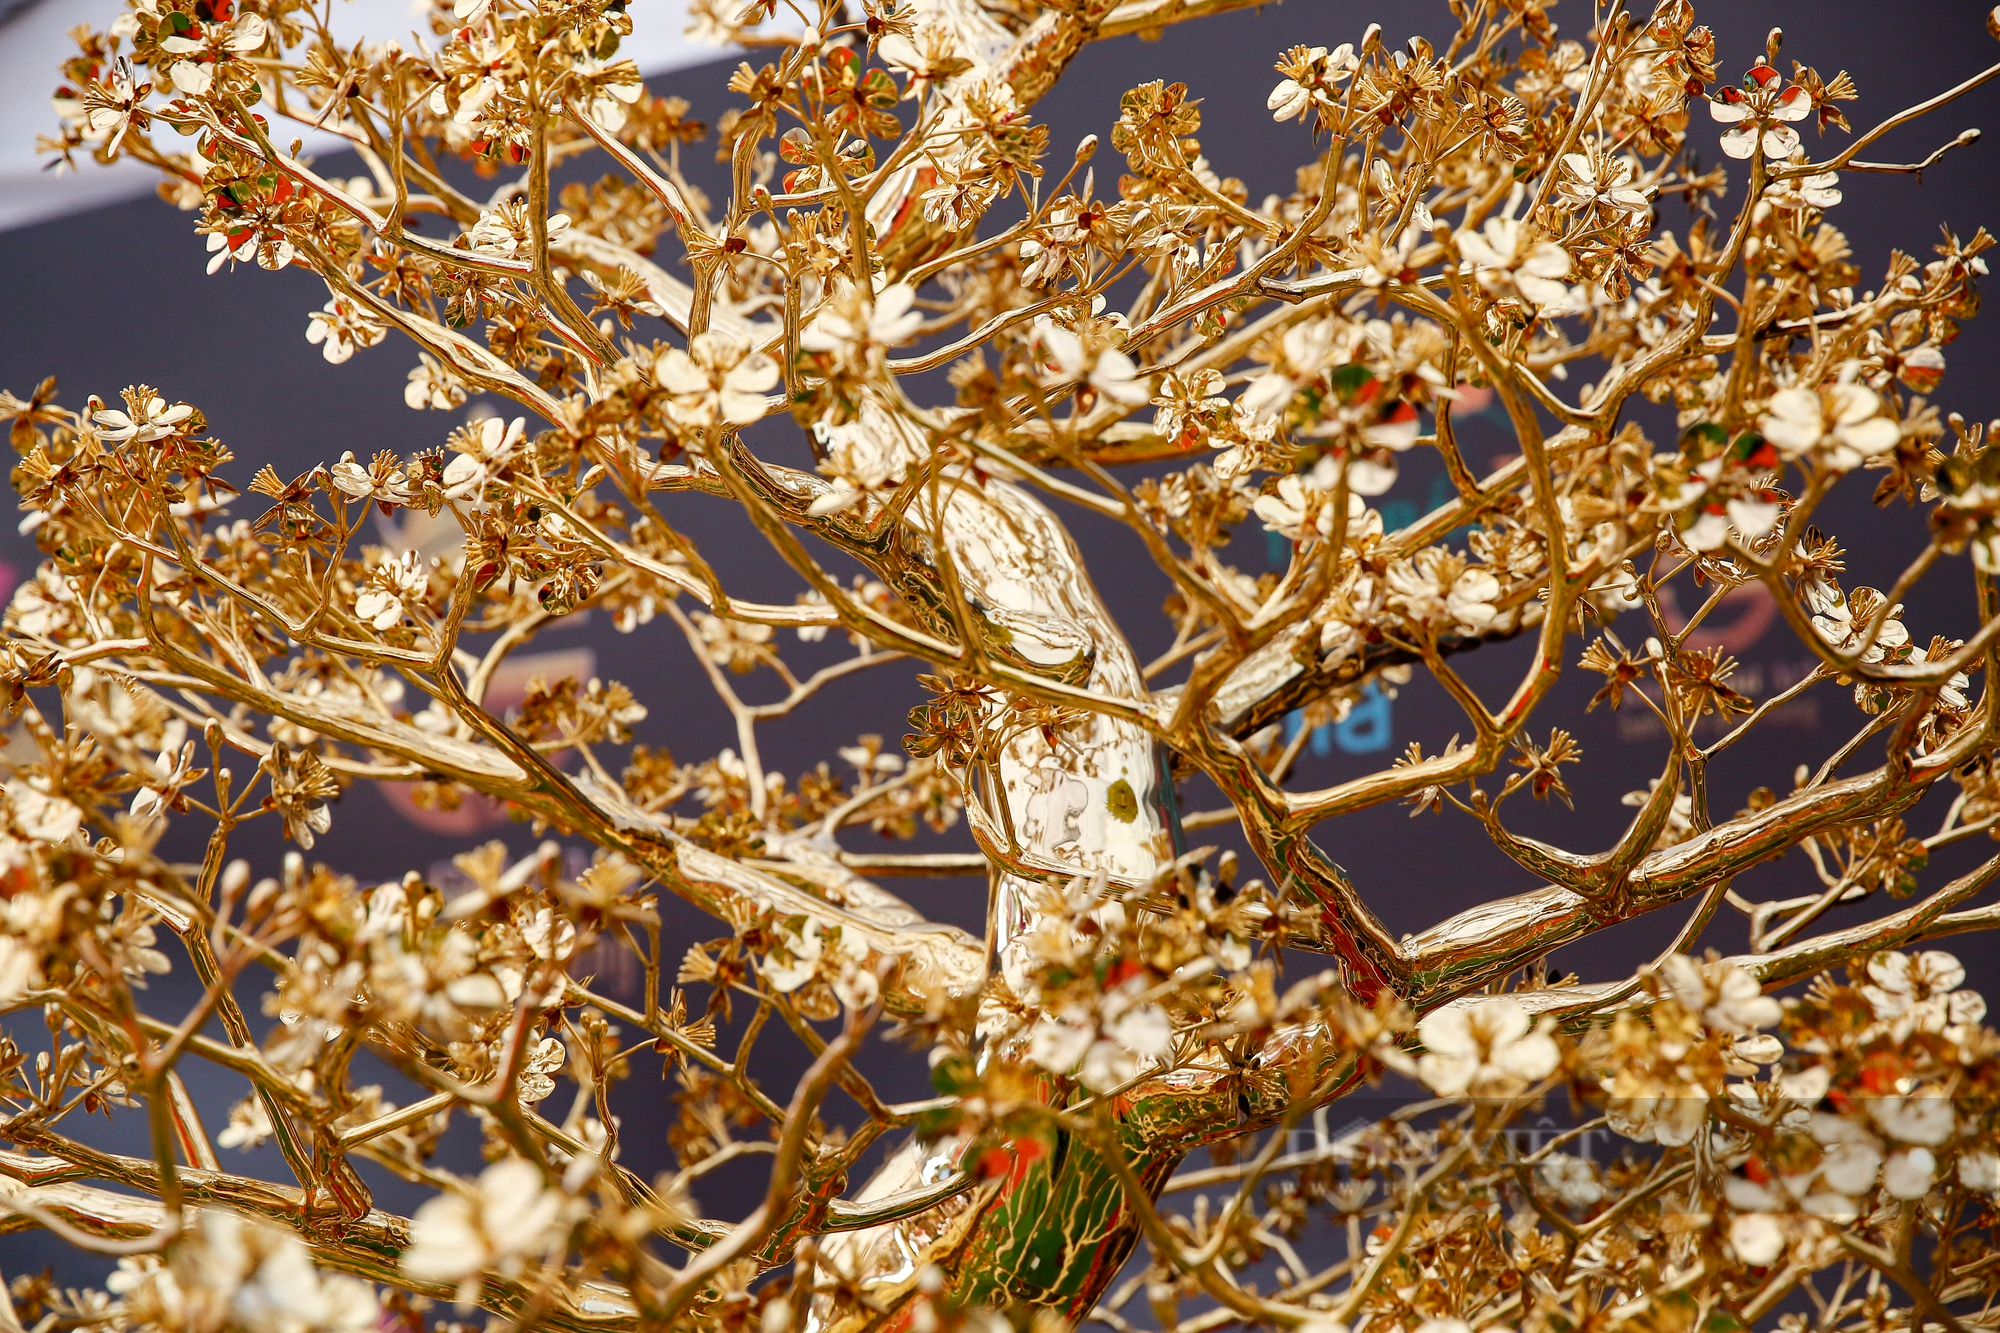 Ngắm cây mai mạ vàng 24k lớn nhất Việt Nam được chào bán 5,5 tỷ đồng tại Hà Nội - Ảnh 6.